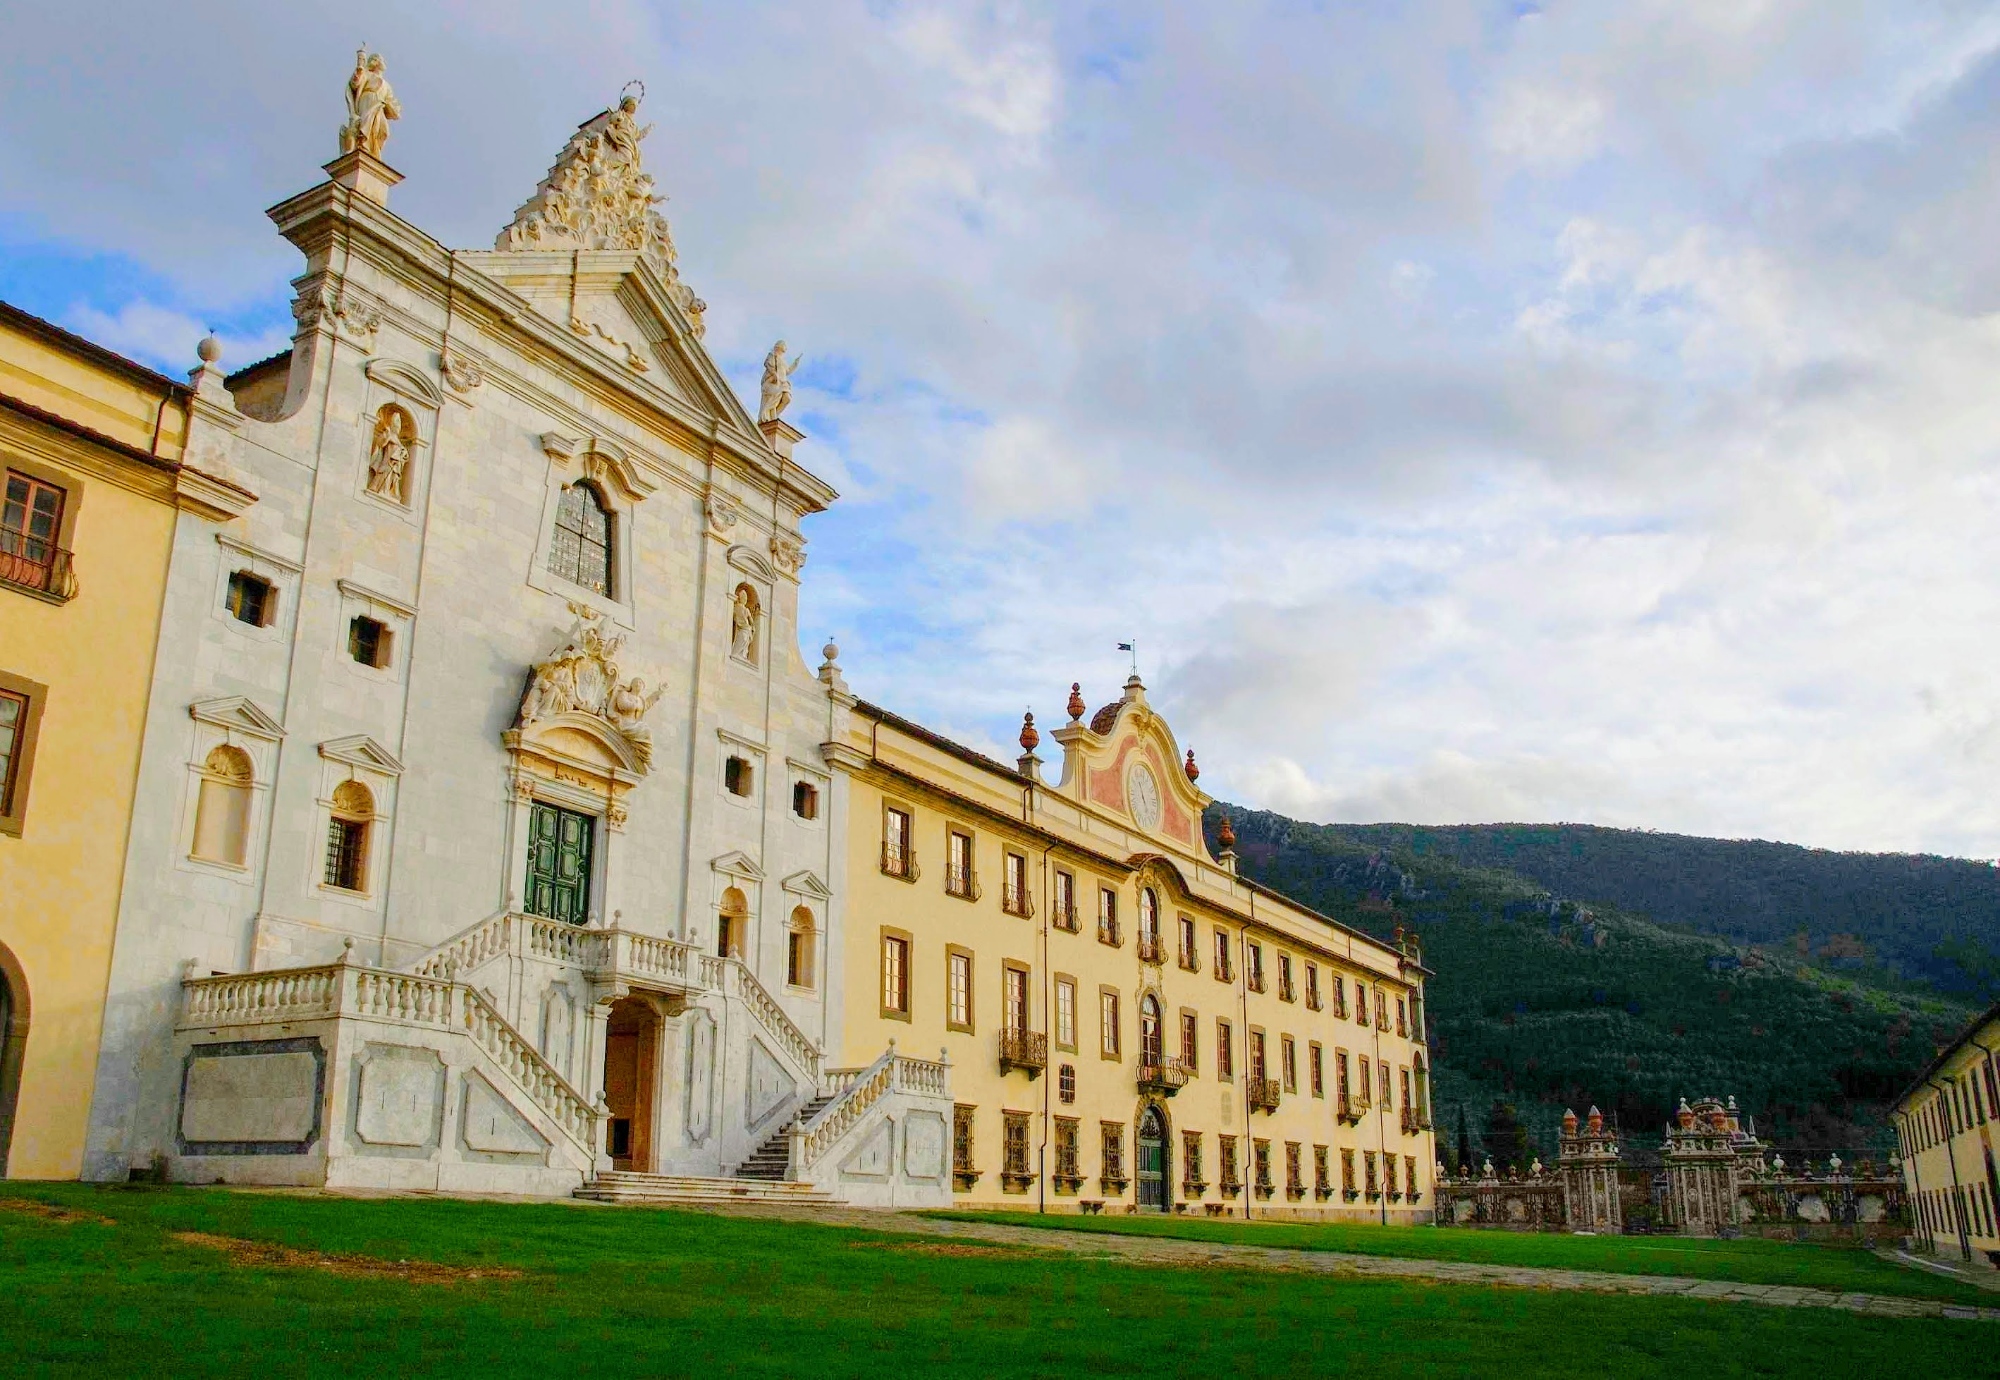 La Certosa di Calci (Kartause von Calci)